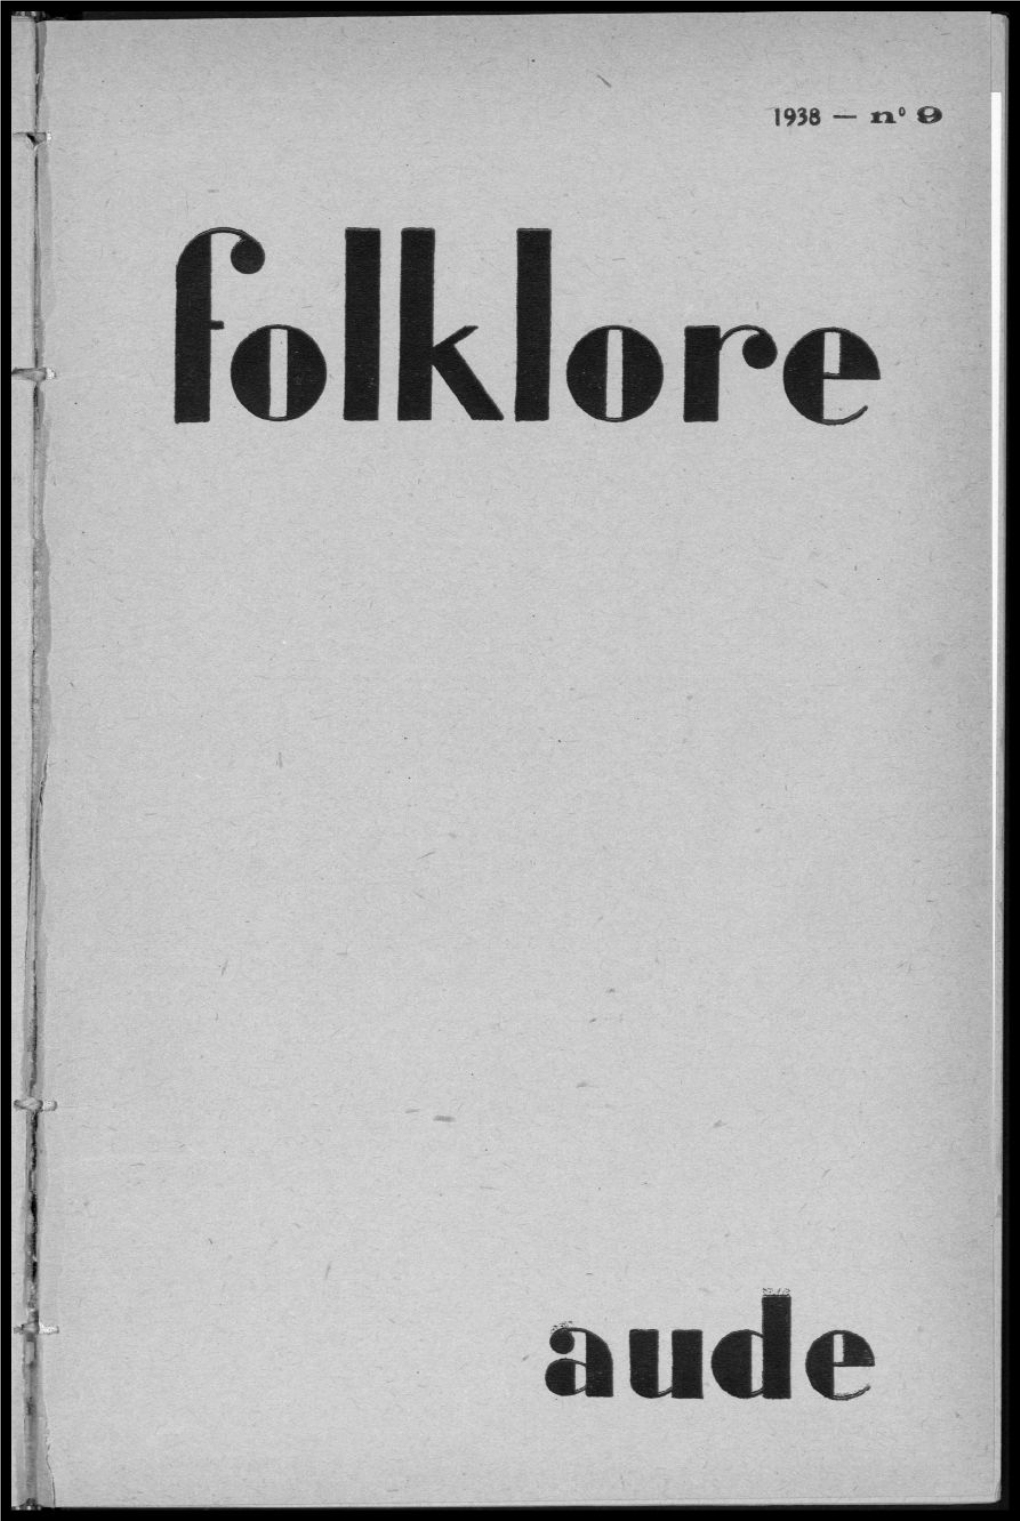 N° 9 Folklore